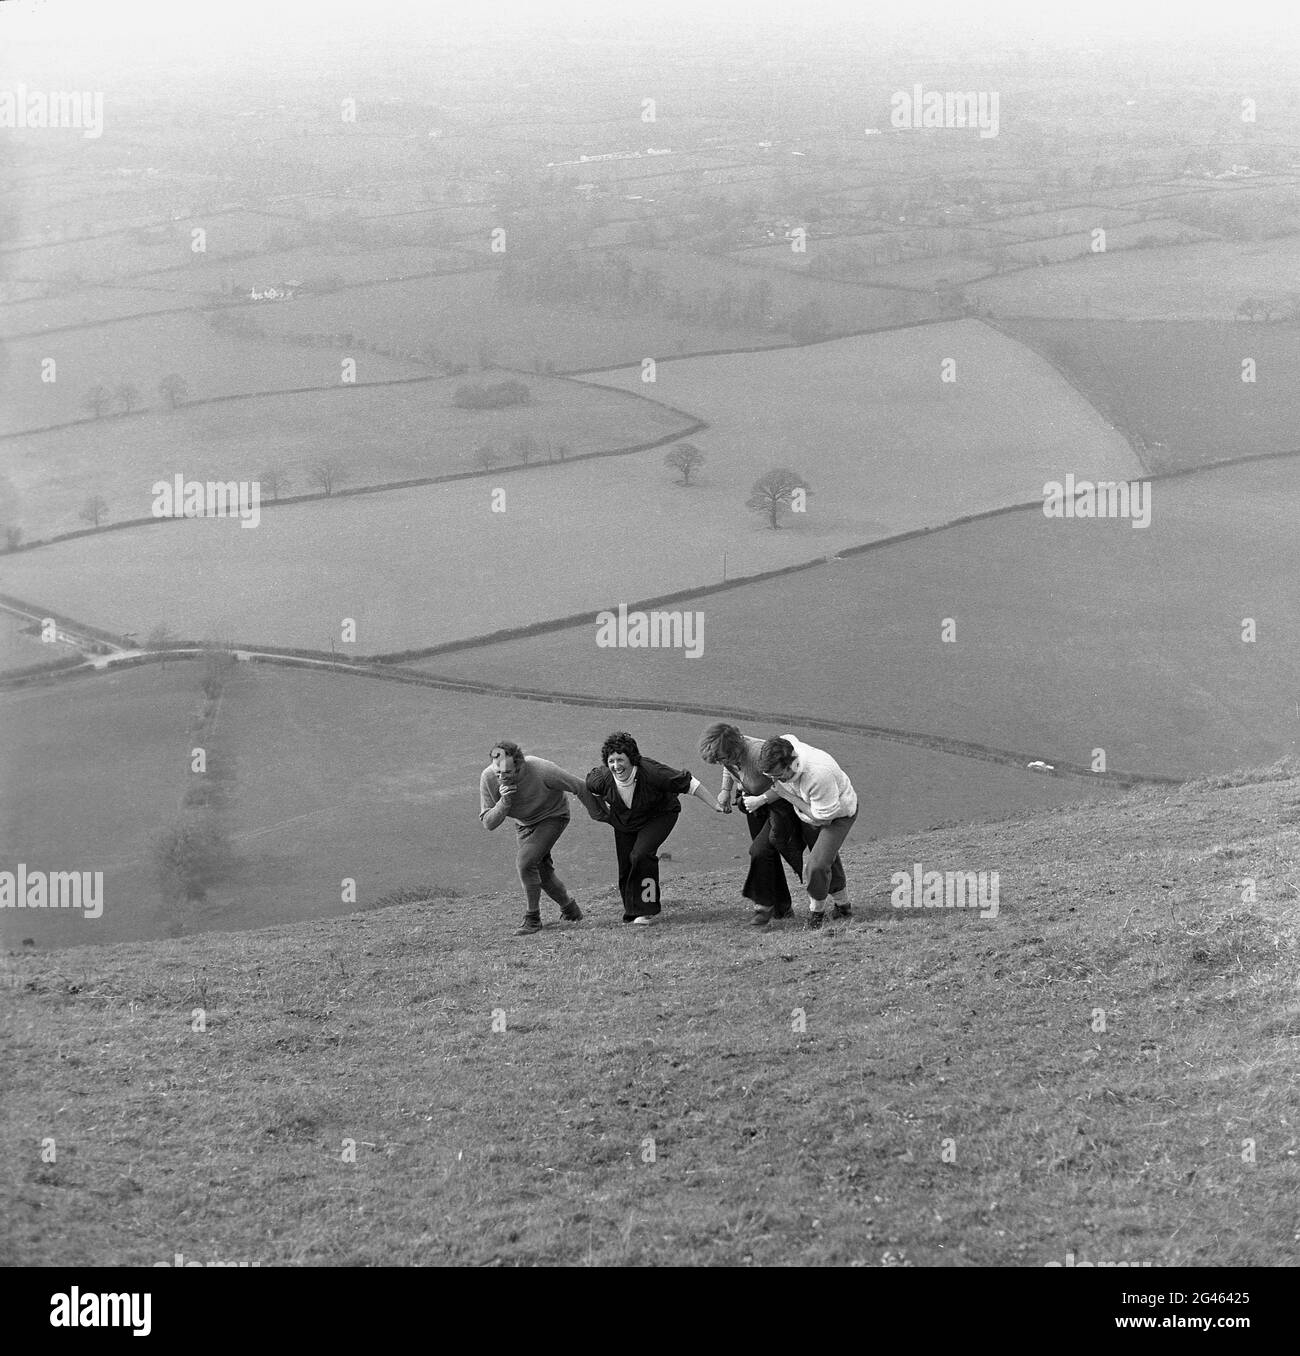 1976, storico, divertente su una collina, due coppie fuori camminando, tenere l'uno sull'altro nei loro tentativi di salire o salire su una collina erbosa ripida, Shropshire, Inghilterra, Regno Unito. Un'area montana, le colline di Shropshire è una delle regioni naturali dell'Inghilterra e un'area di eccezionale bellezza naturale (AONB). Foto Stock